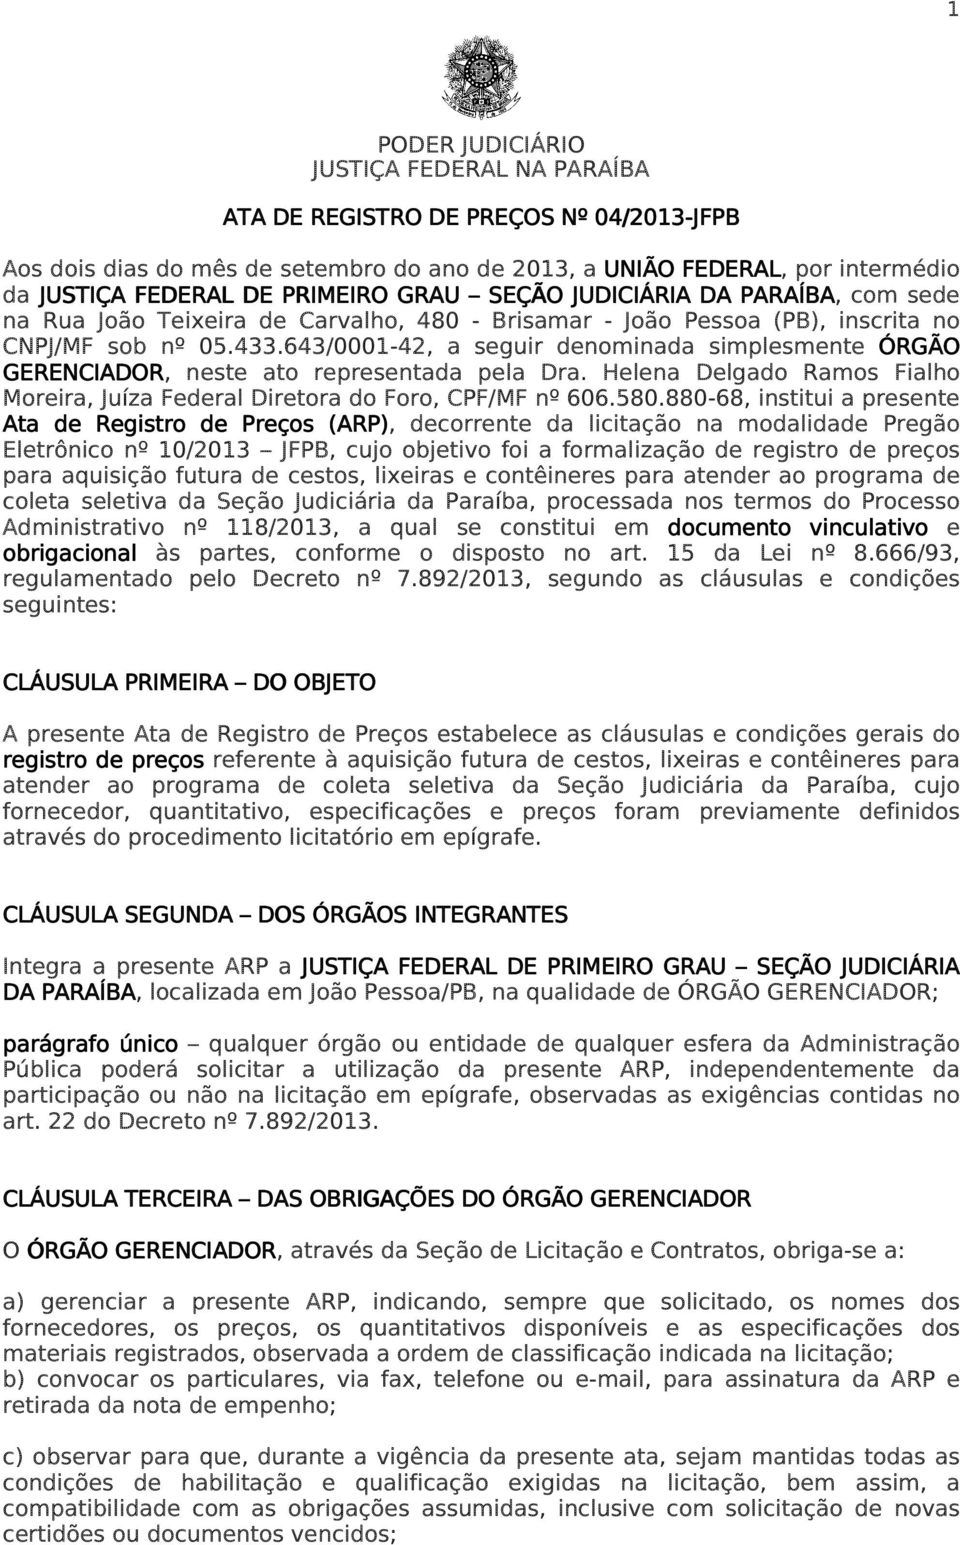 643/0001-42, a seguir denominada simplesmente ÓRGÃO GERENCIADOR, neste ato representada pela Dra. Helena Delgado Ramos Fialho Moreira, Juíza Federal Diretora do Foro, CPF/MF nº 606.580.